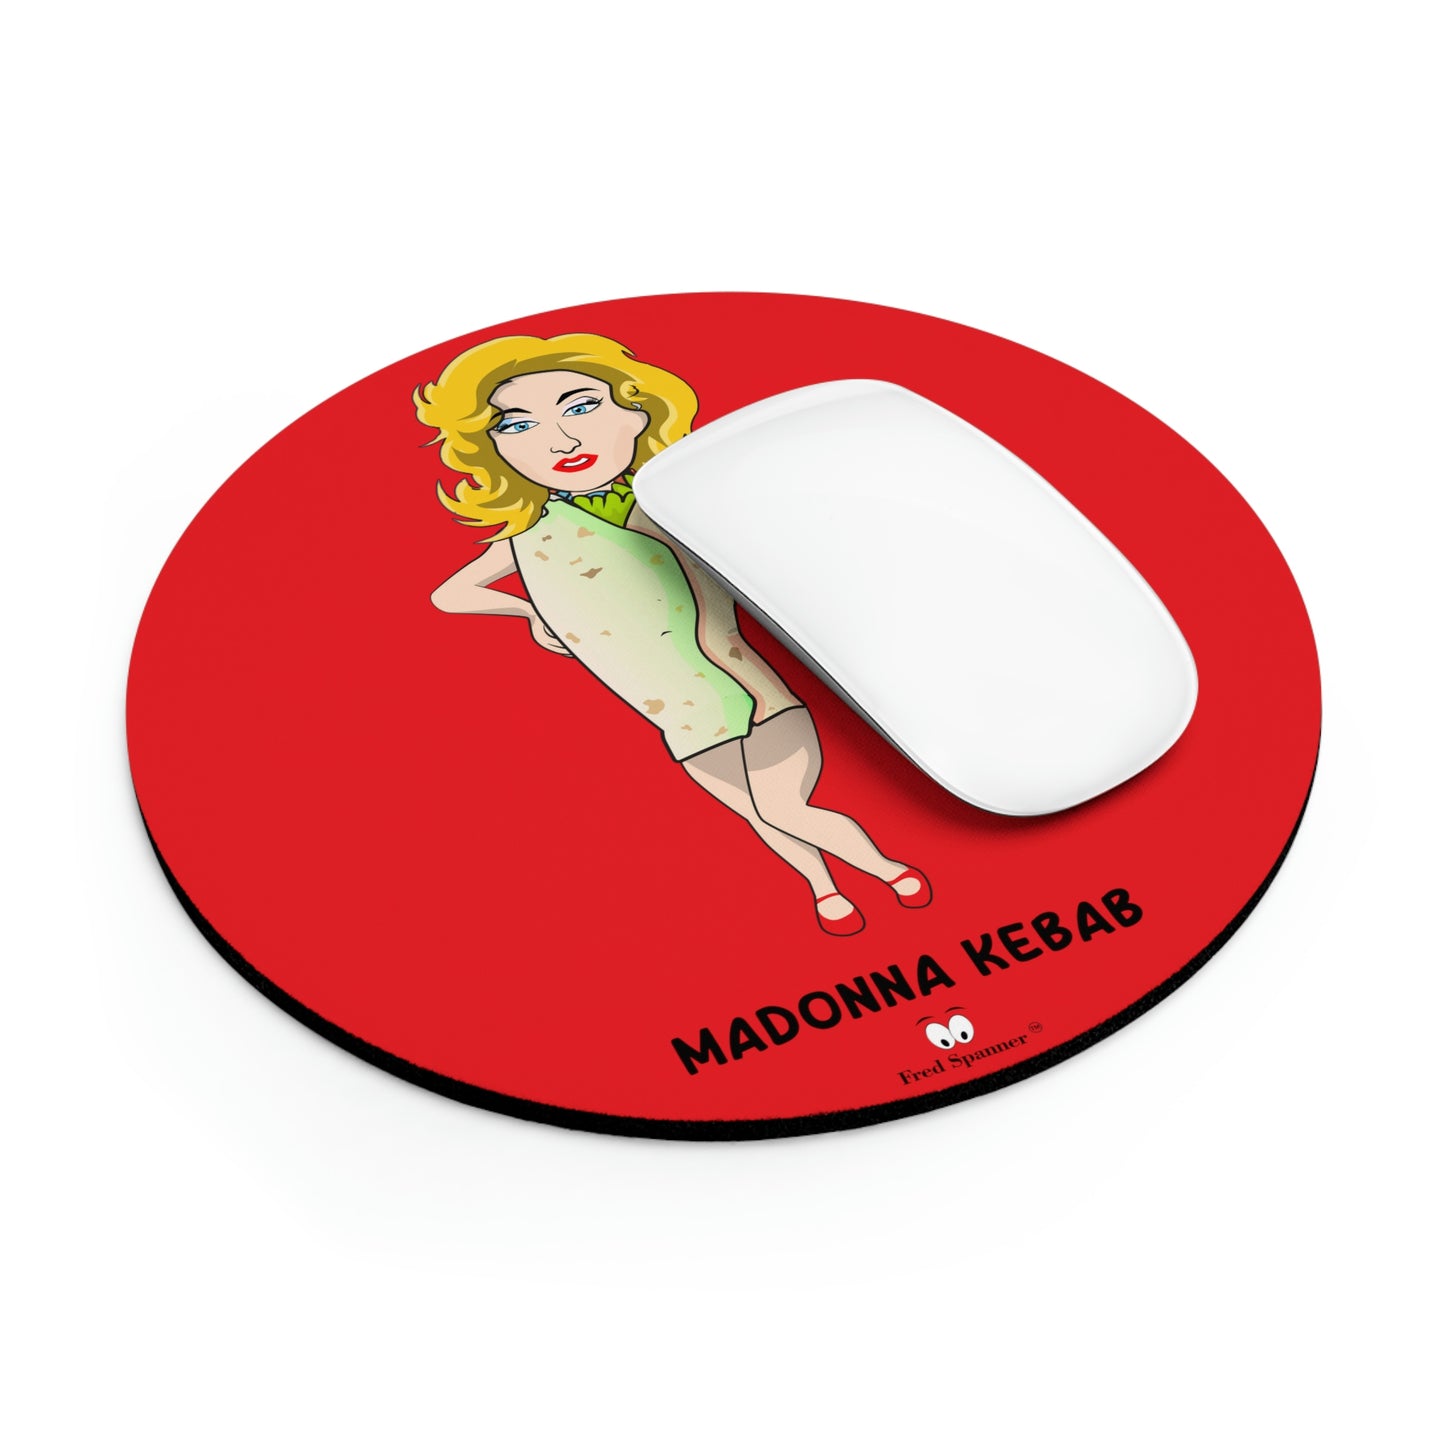 Madonna Kebab Mouse Pad